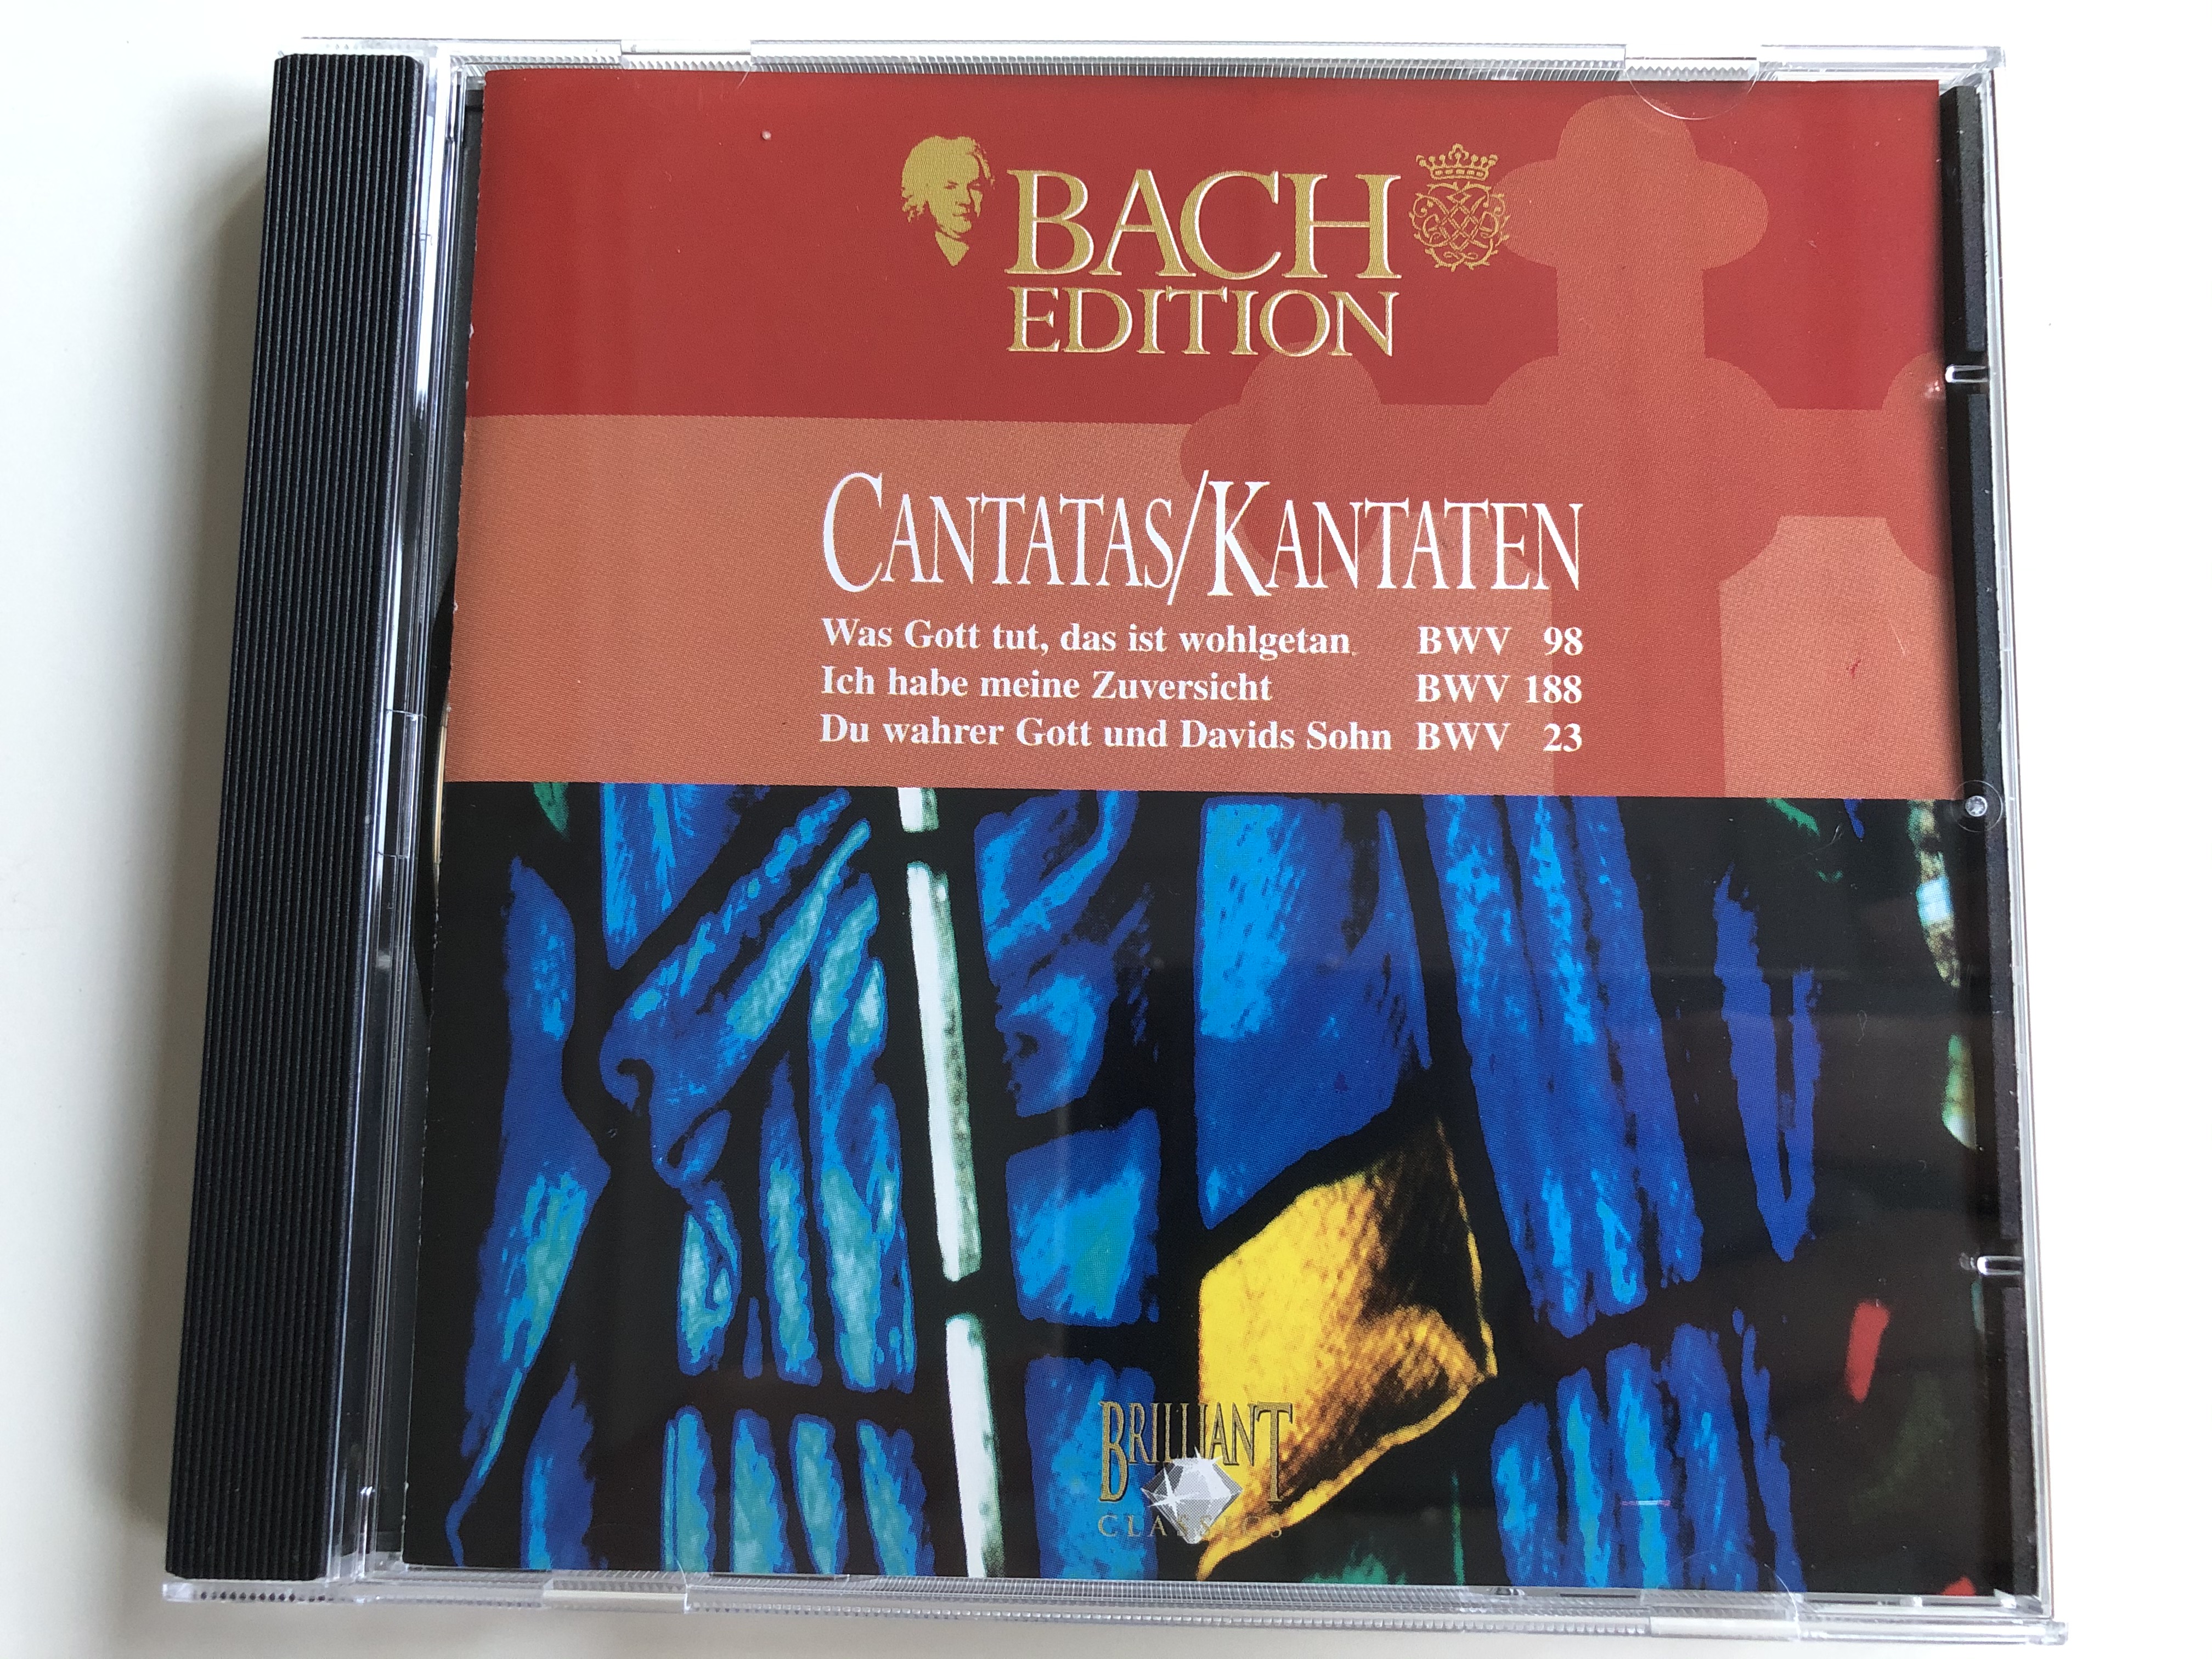 bach-edition-cantatas-kantaten-was-gott-tut-das-ist-wohlgetan-bwv-98-ich-habe-meine-zuversicht-bwv-188-du-wahrer-gott-und-davids-sohn-bwv-23-brilliant-classics-audio-cd-993644-1-.jpg